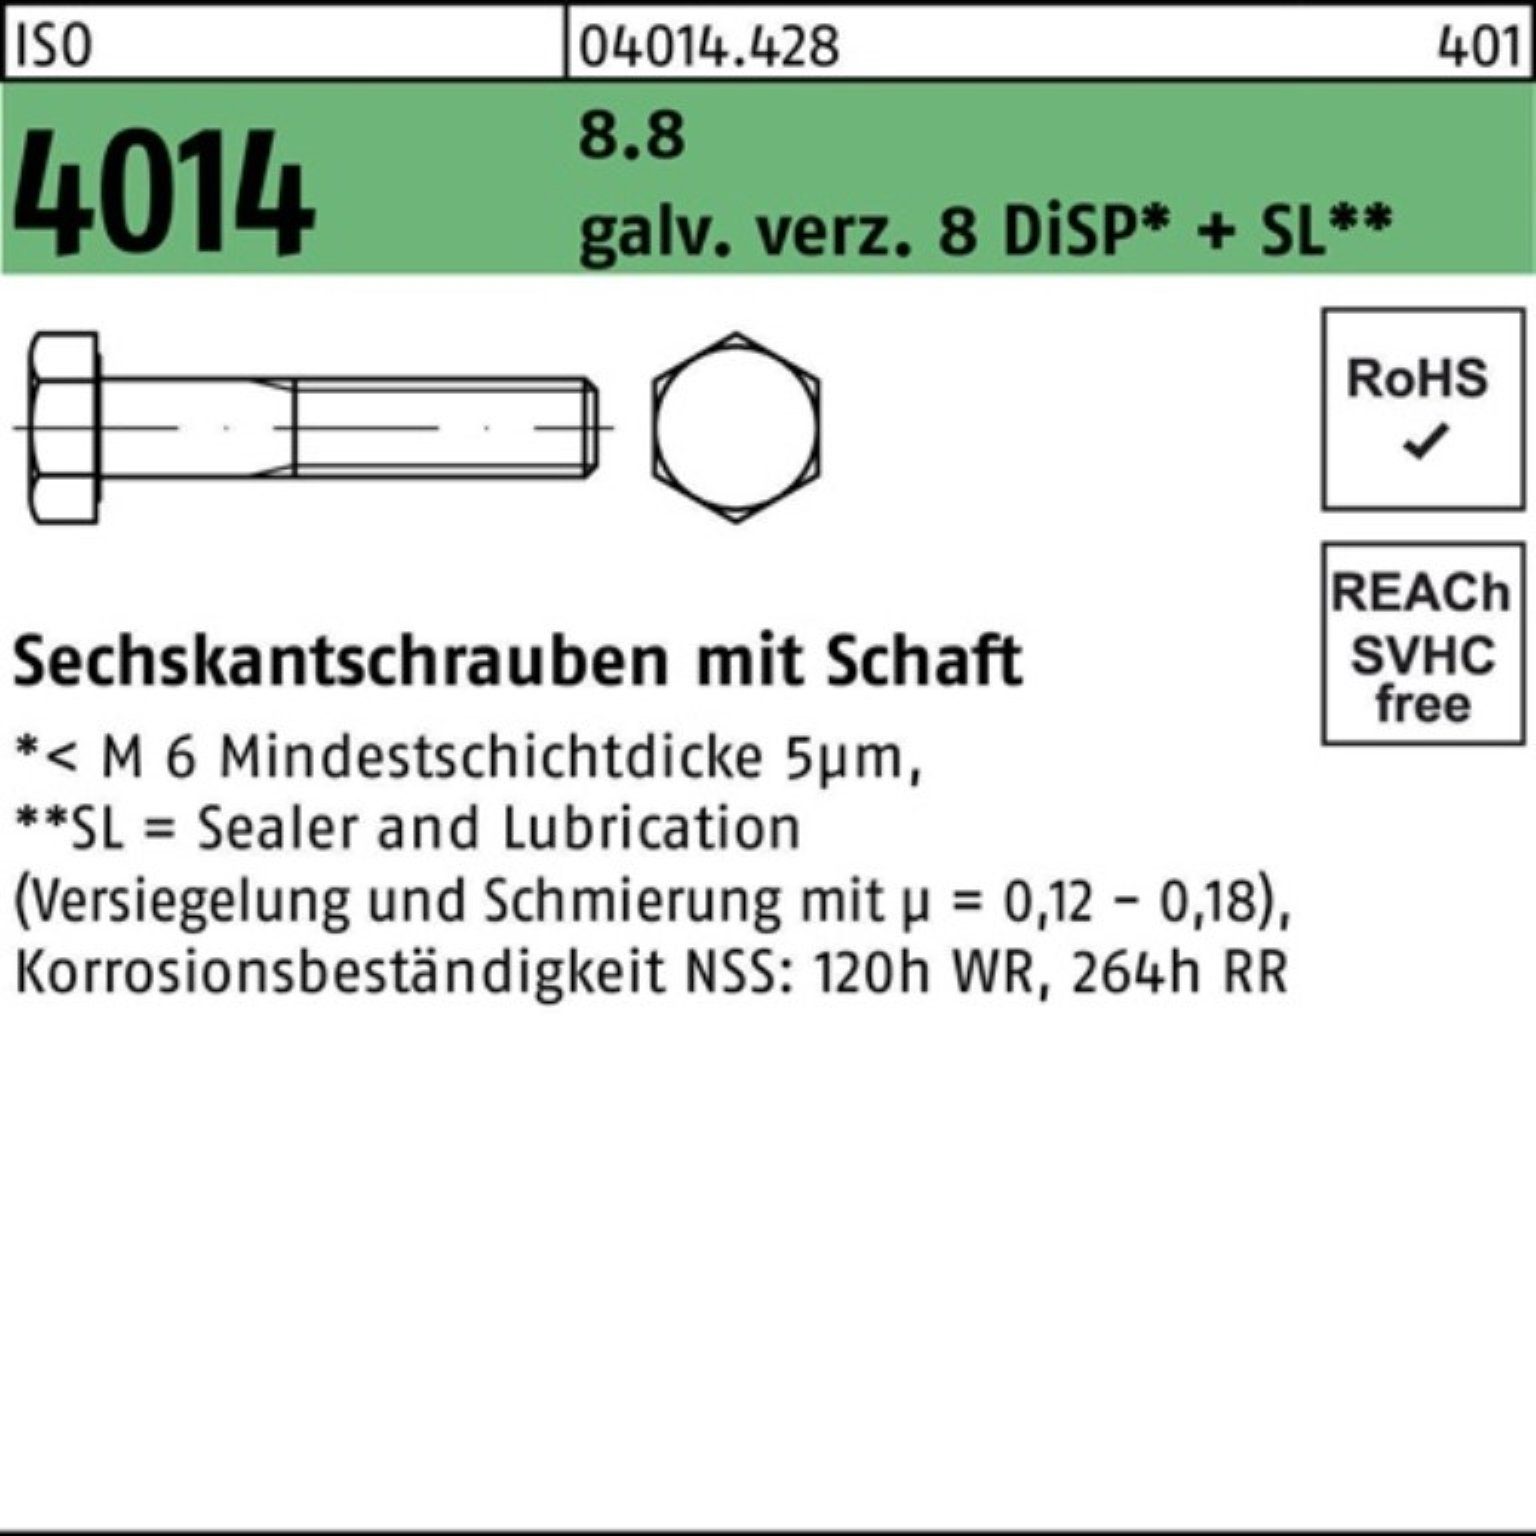 Bufab Sechskantschraube Pack 8.8 8 4014 Schaft galv.verz. ISO M20x120 Sechskantschraube 100er